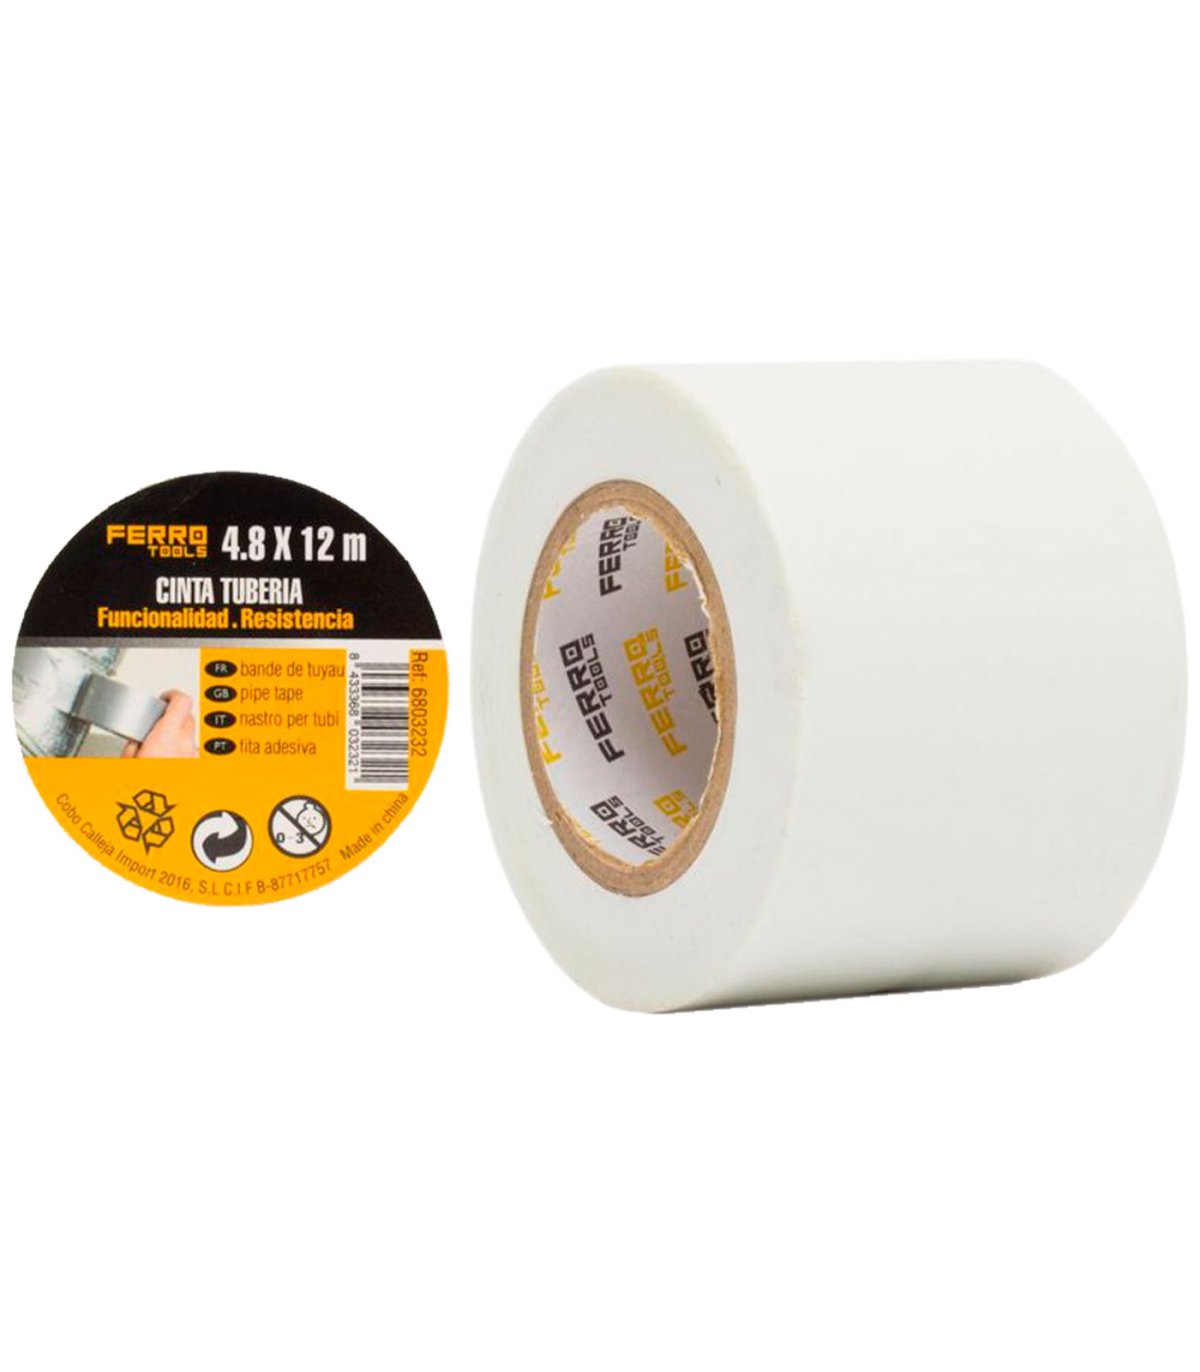 Tradineur - Pack de 2 rollos de celo, cinta adhesiva transparente